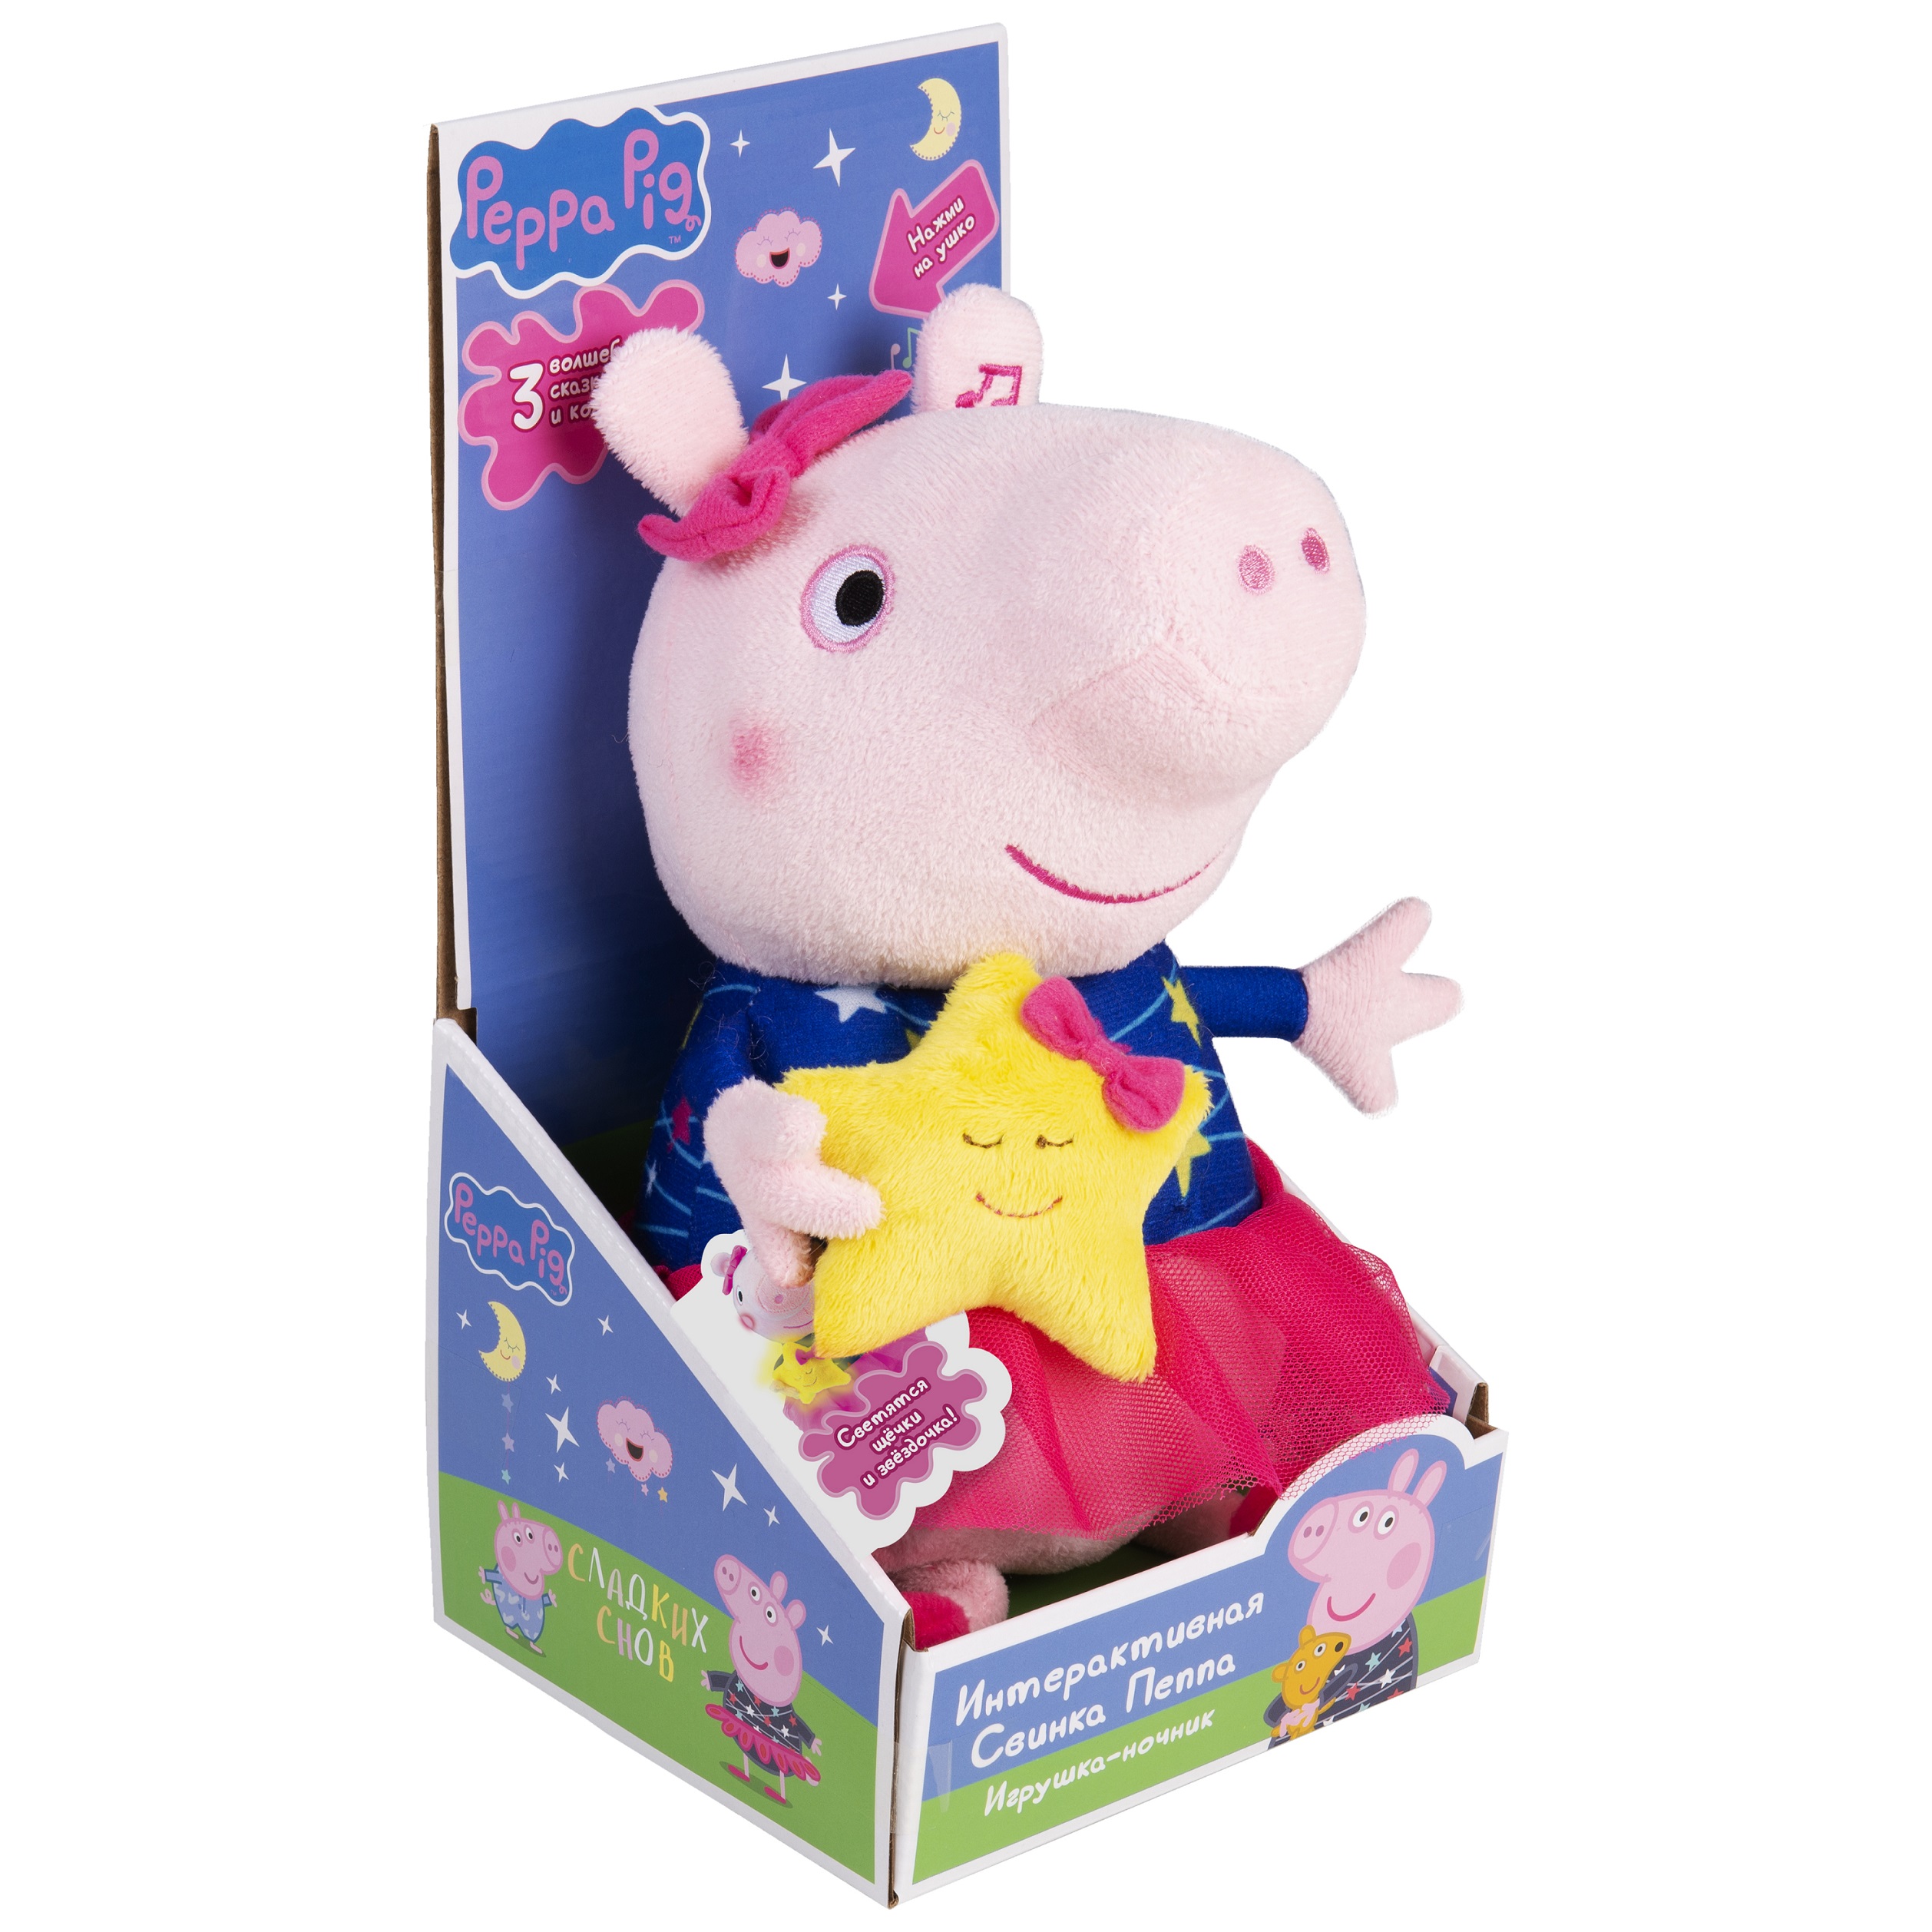 Игрушка мягкая Peppa Pig(Свинка Пеппа) Pig 30117